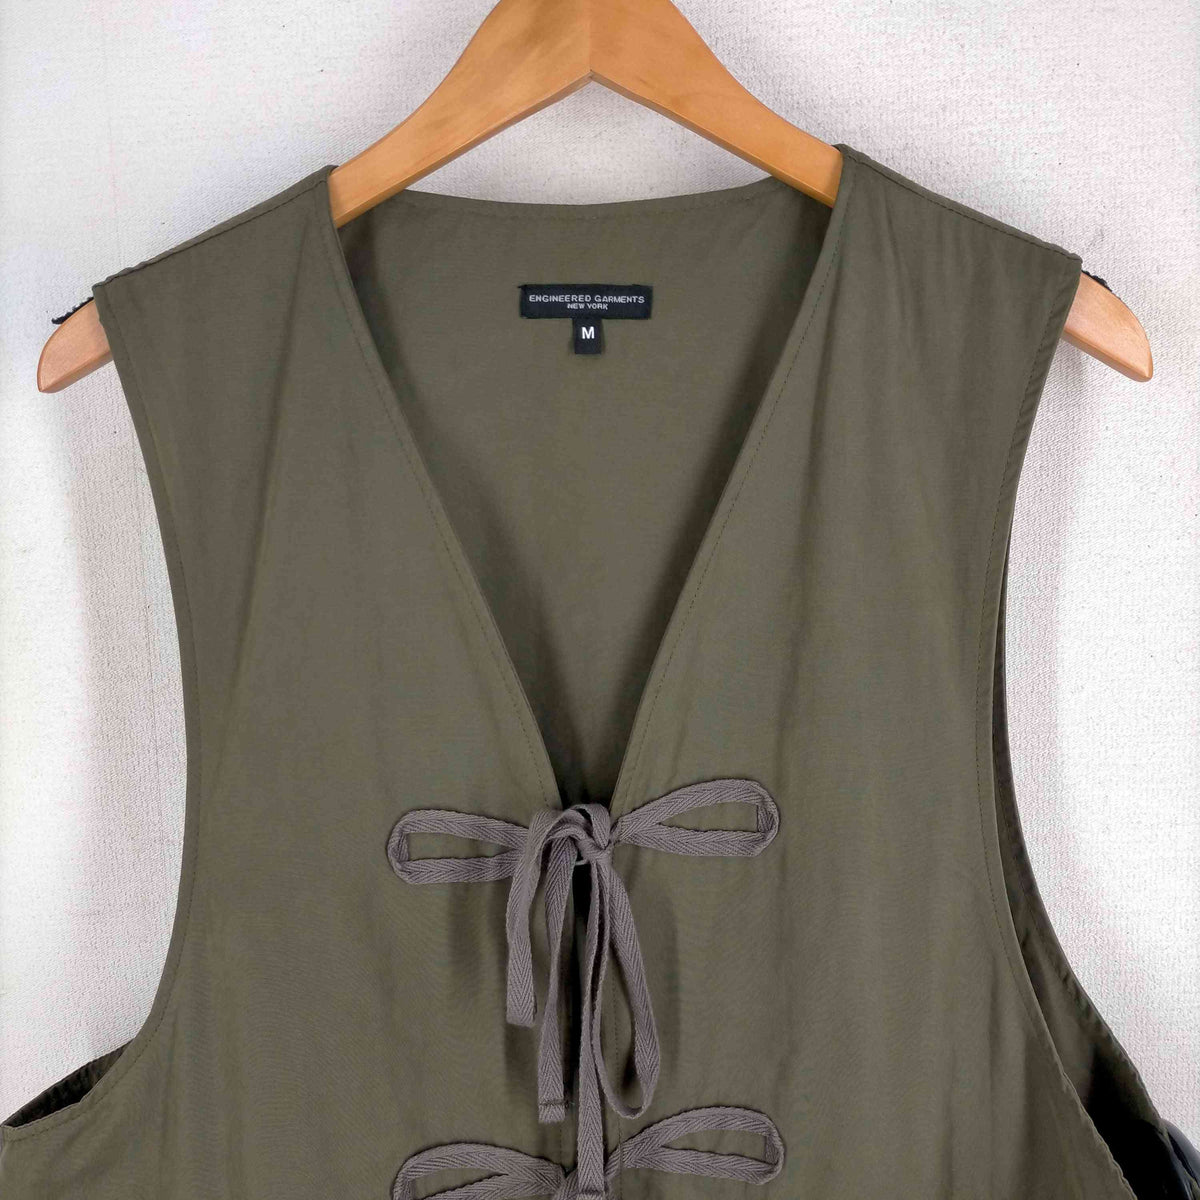 Engineered Garments(エンジニアードガーメンツ)22AW Fishing Vest 